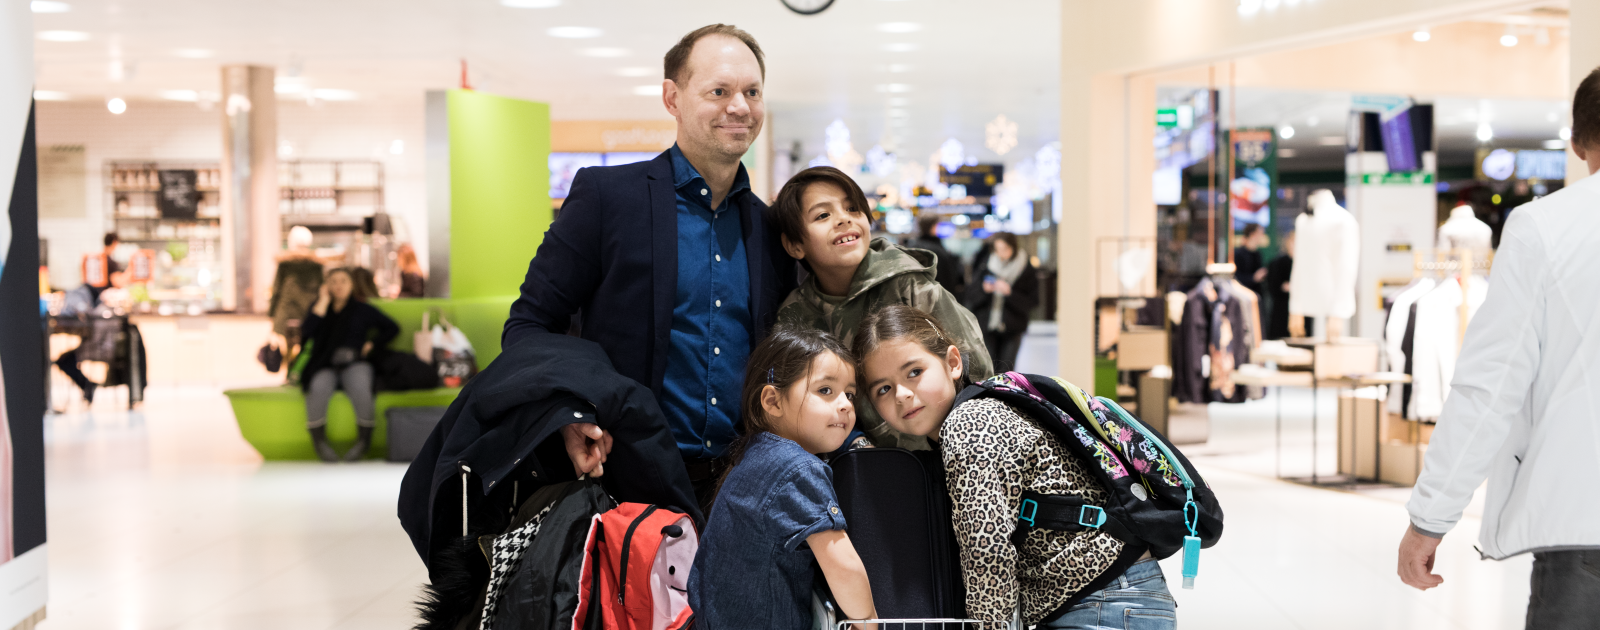 Familj på flygplatsen